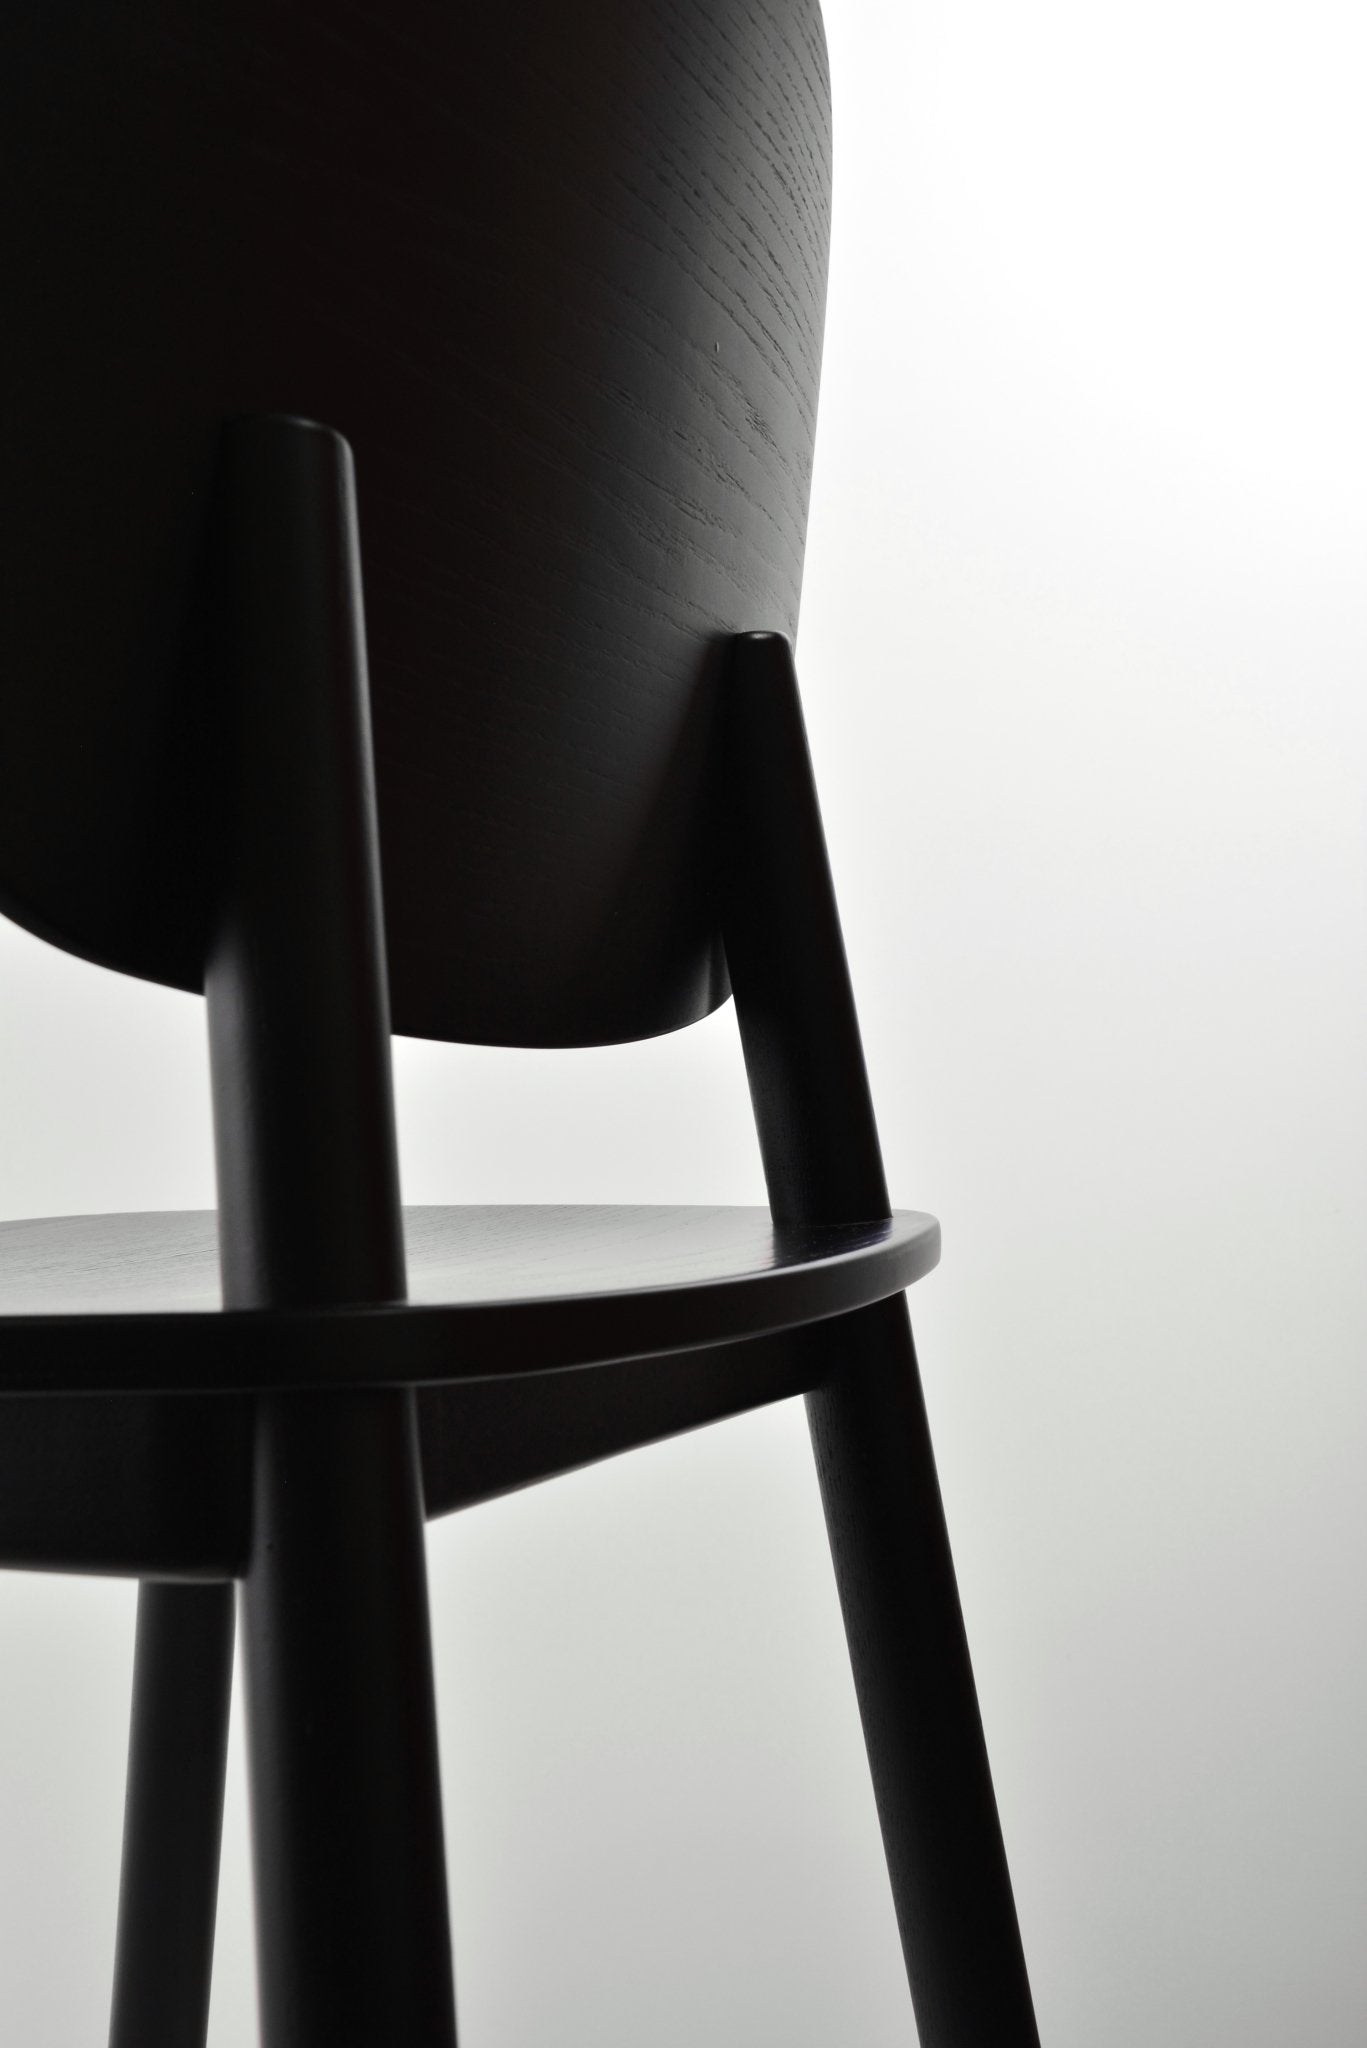 Met zijn originele en stevige structuur is de zwarte PADDLE Chair ideaal voor gezellige huizen, cafés, restaurants en hotels.